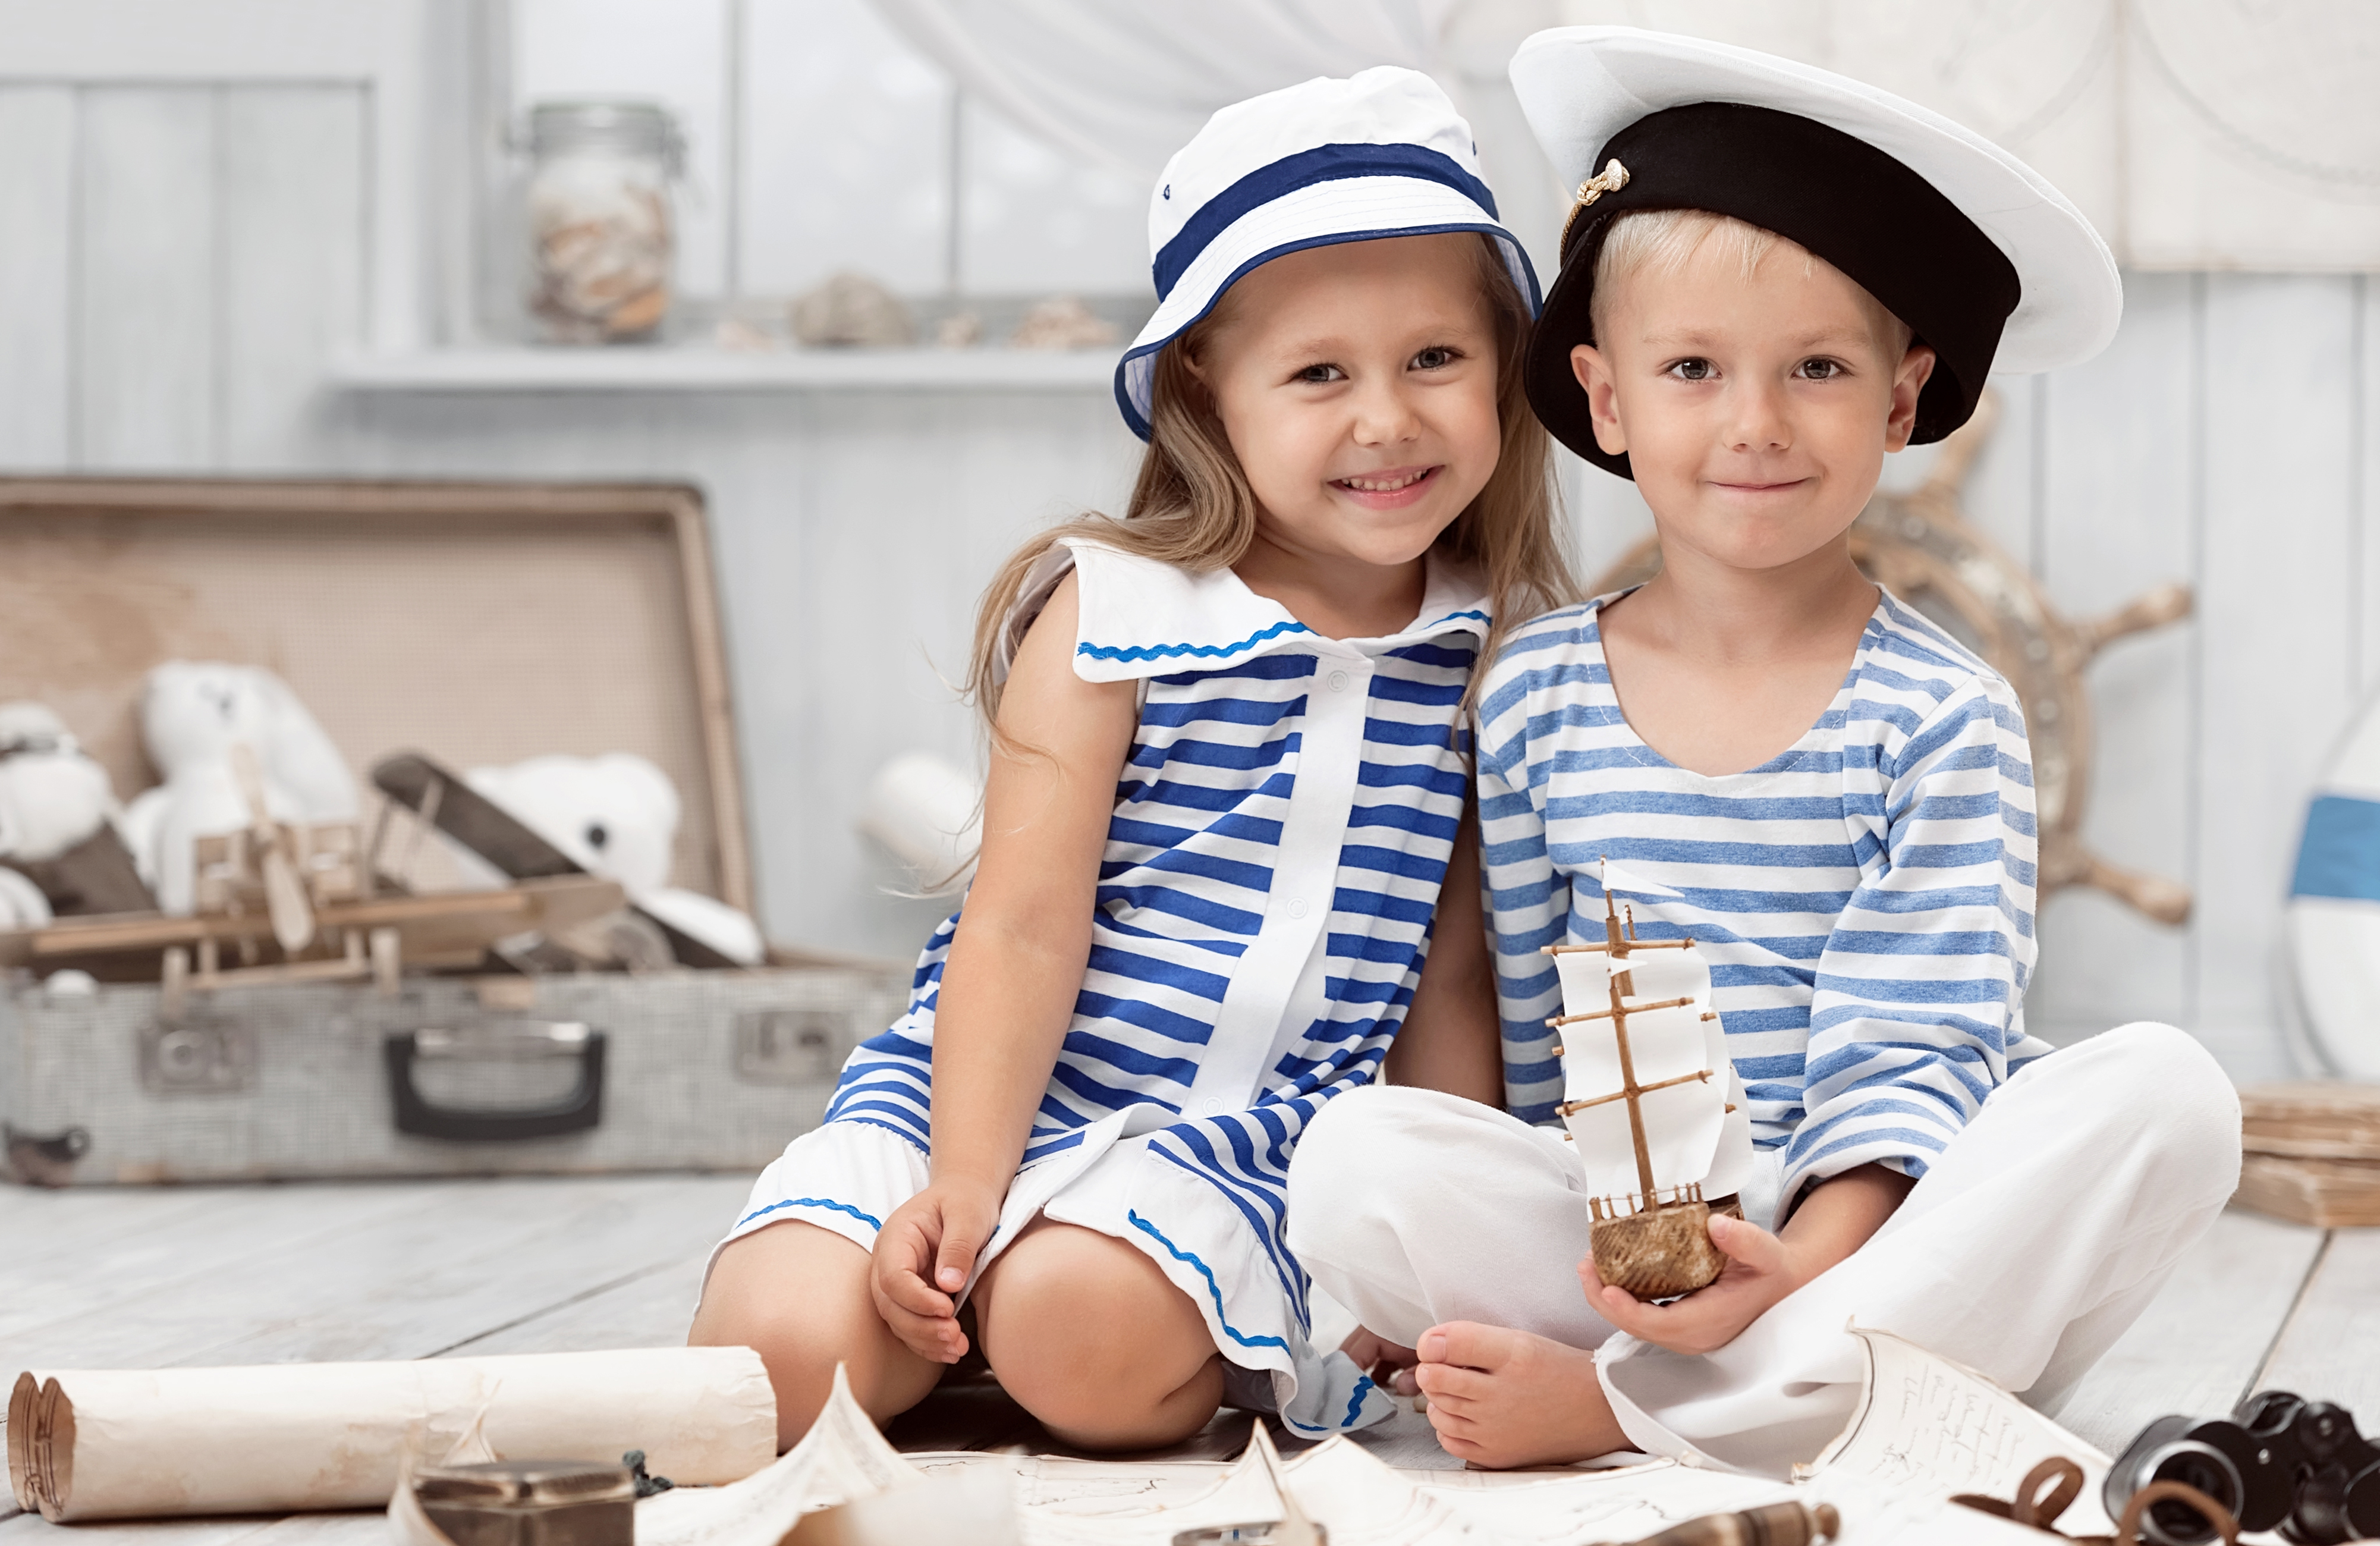 Boy girl shows. Морской стиль в одежде. Морской стиль в одежде для детей. Фотосессия в морском стиле для детей.